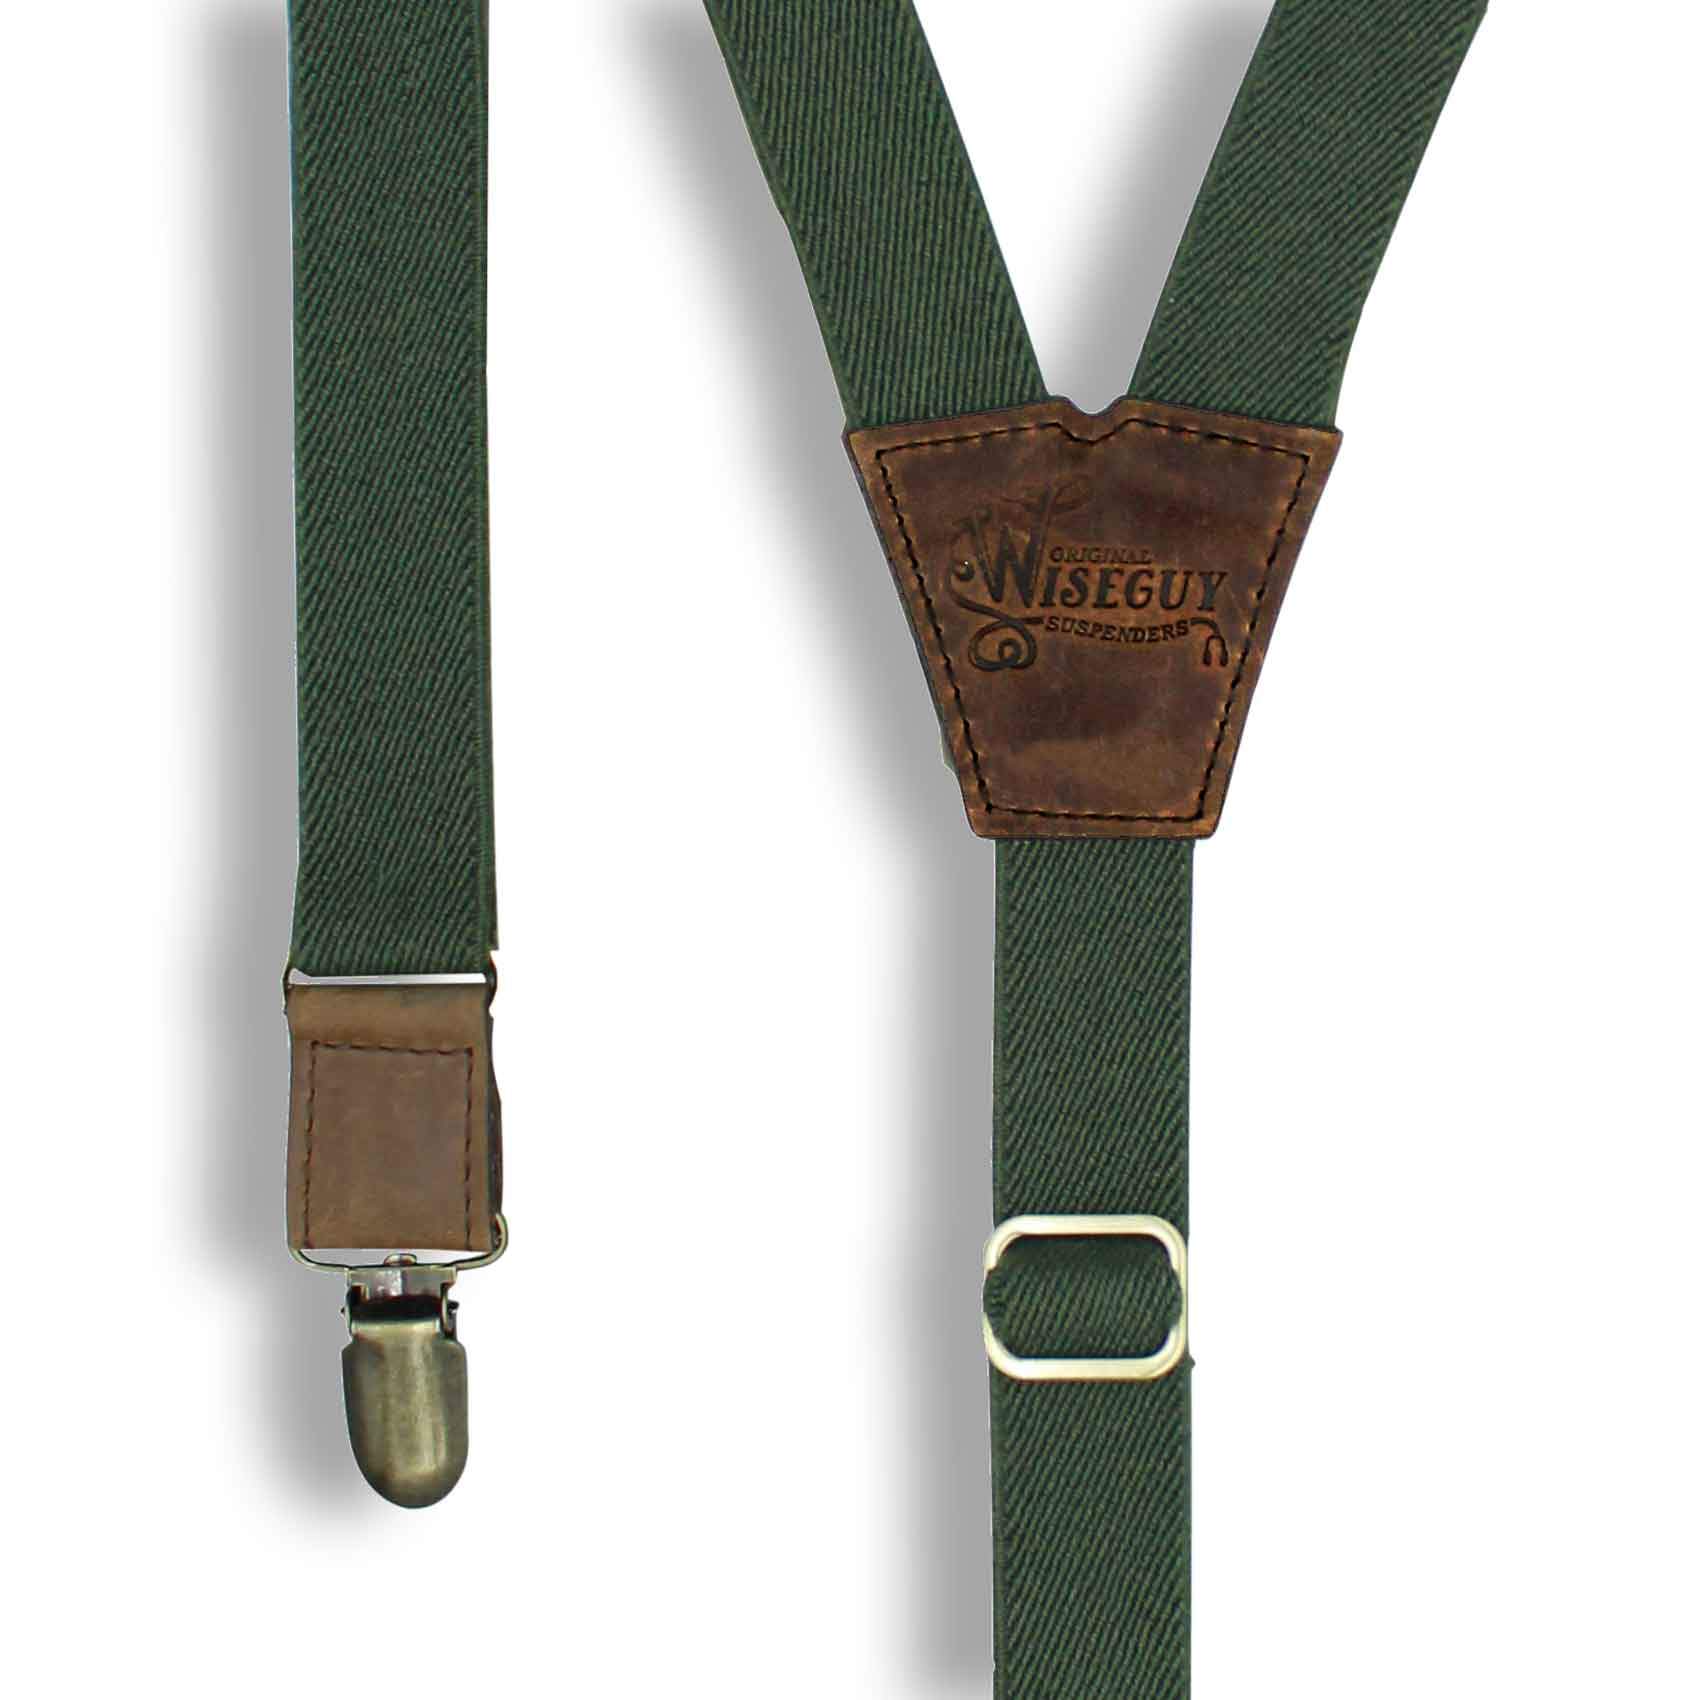 Army Green mens trouser braces suspenders 1" wide Dark Brown Leather - Wiseguy Suspenders